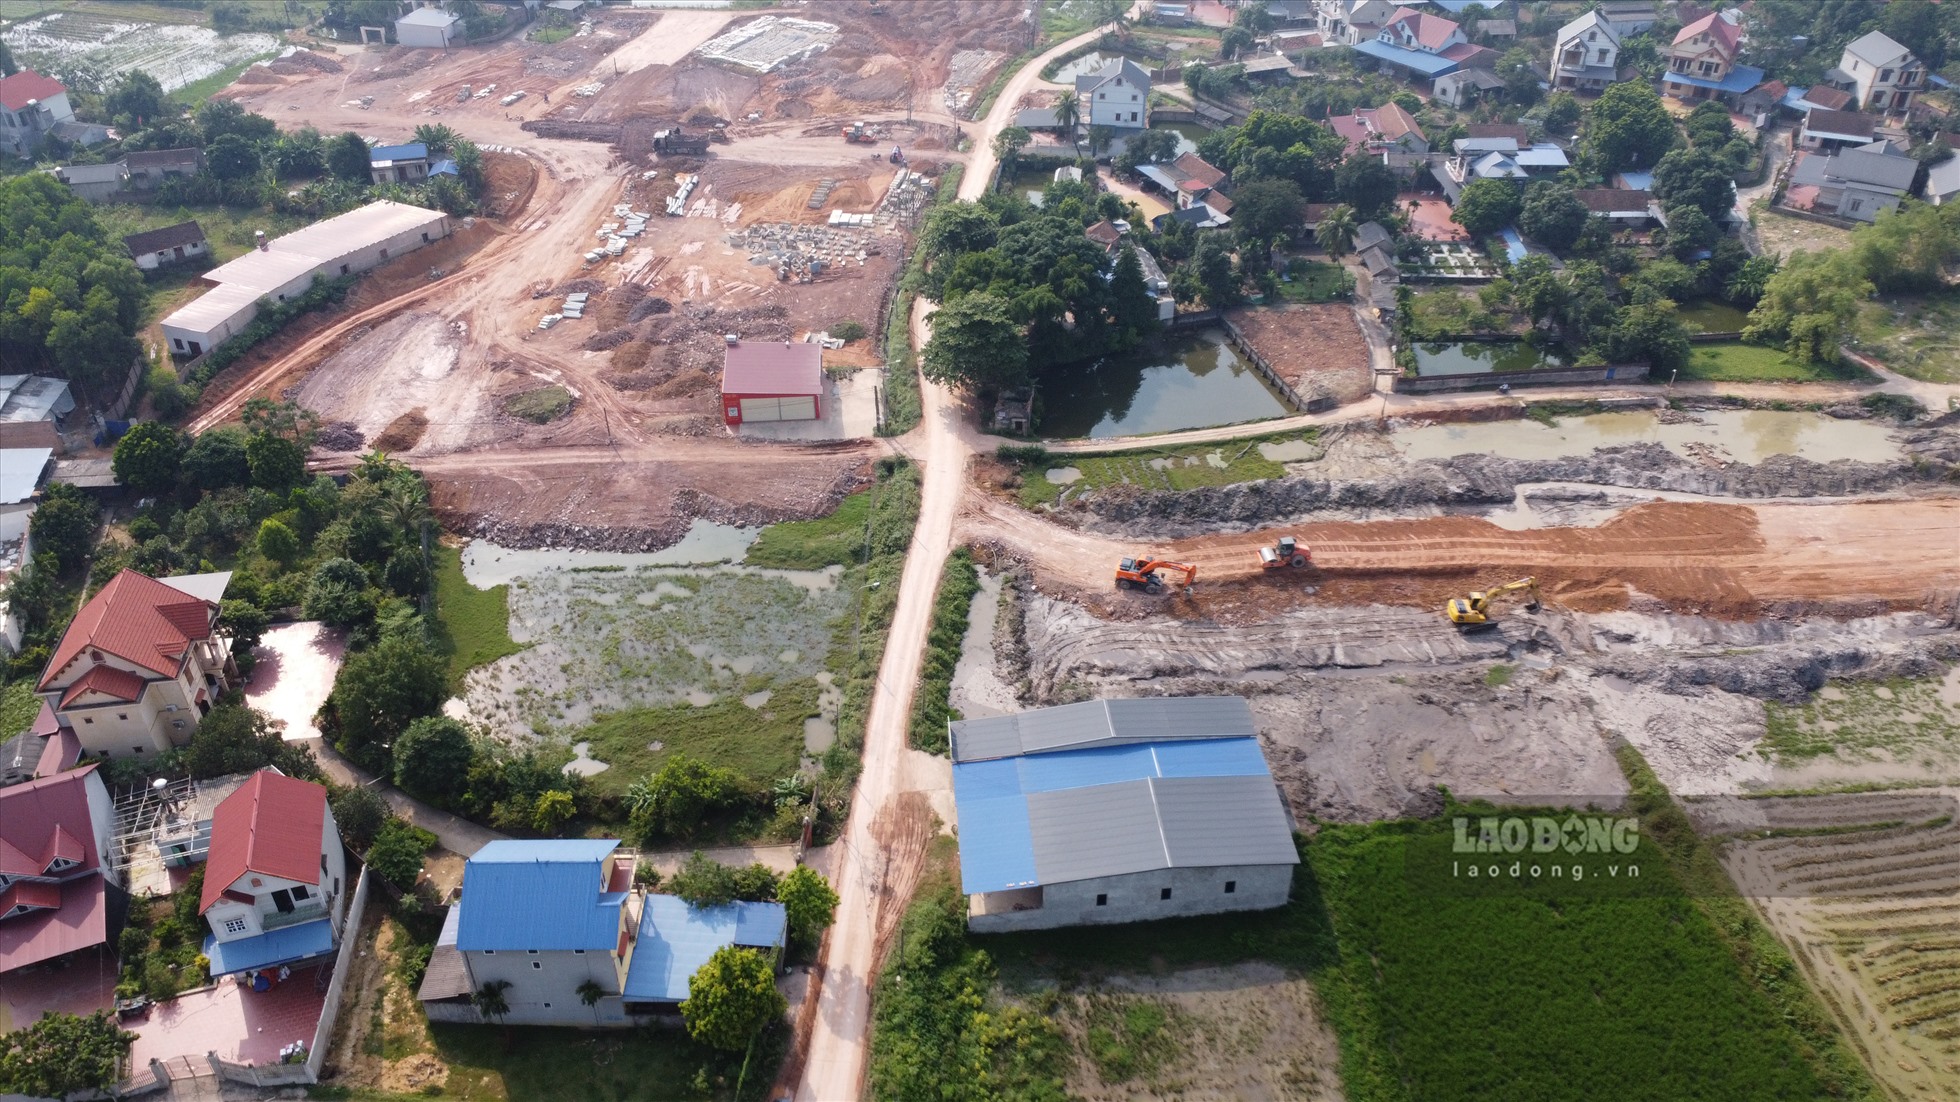 Toàn cảnh Khu tái định cư Tân Hương và một đoạn dự án tuyến đường liên kết (Bắc Giang - Thái Nguyên - Vĩnh Phúc) tại khu vực TDP Duyên Bắc, phường Tân Hương.